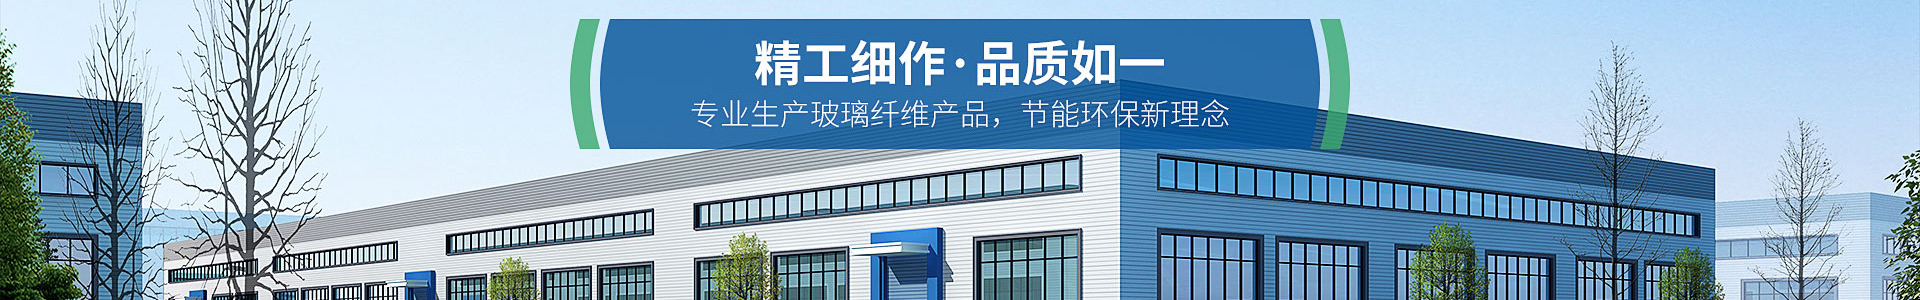 (PC+WAP)蓝色玻璃纤维制品网站模板 营销型环保设备网站